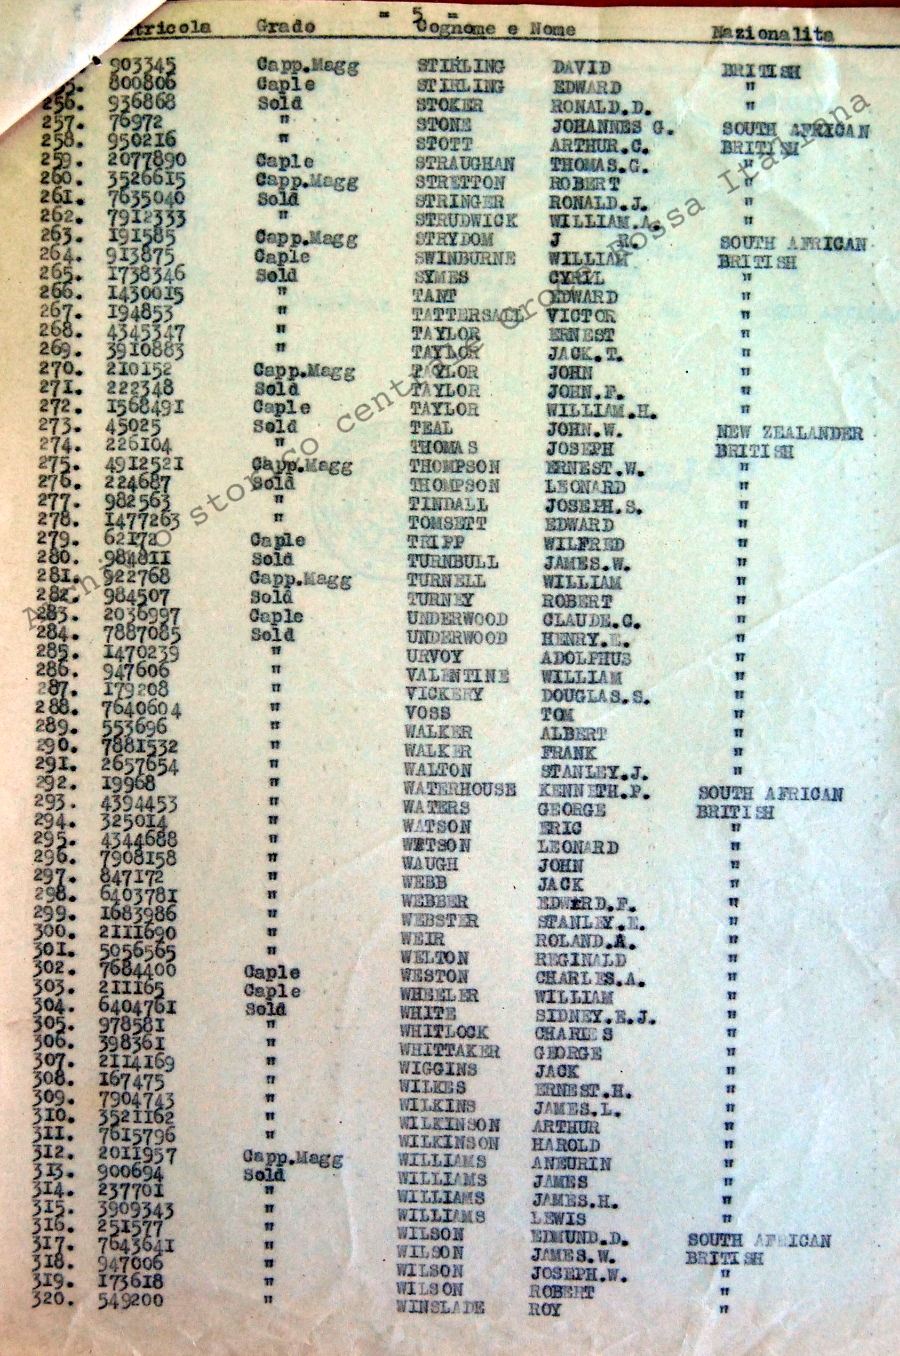 Ruolino di marcia relativo a 332 p.g. trasferiti il 21 luglio 1943